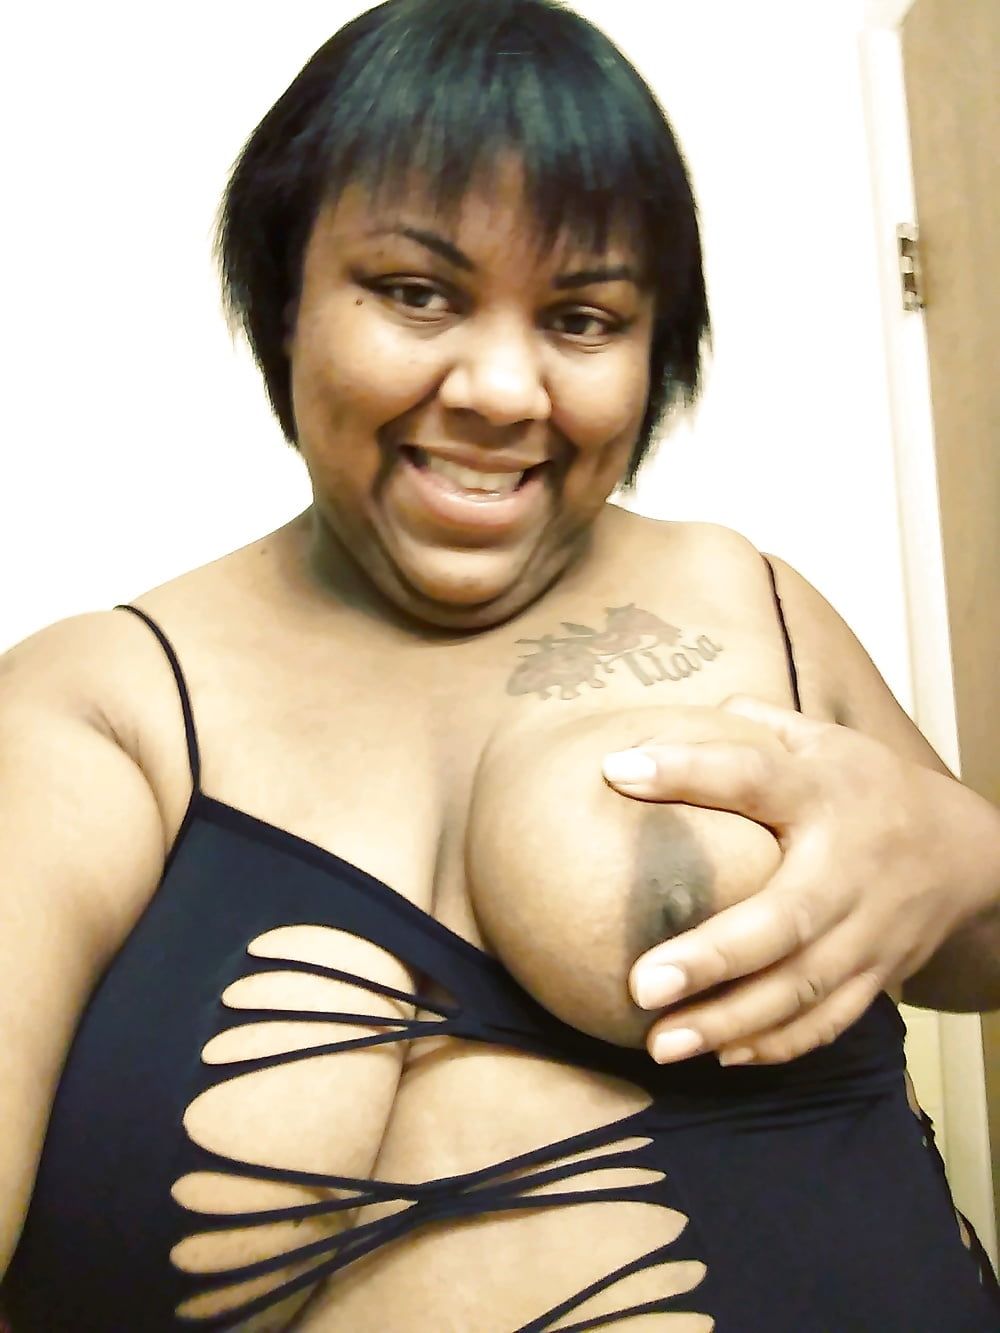 I'm Big Titty Tiara Danielle Cox Detroit MI #21